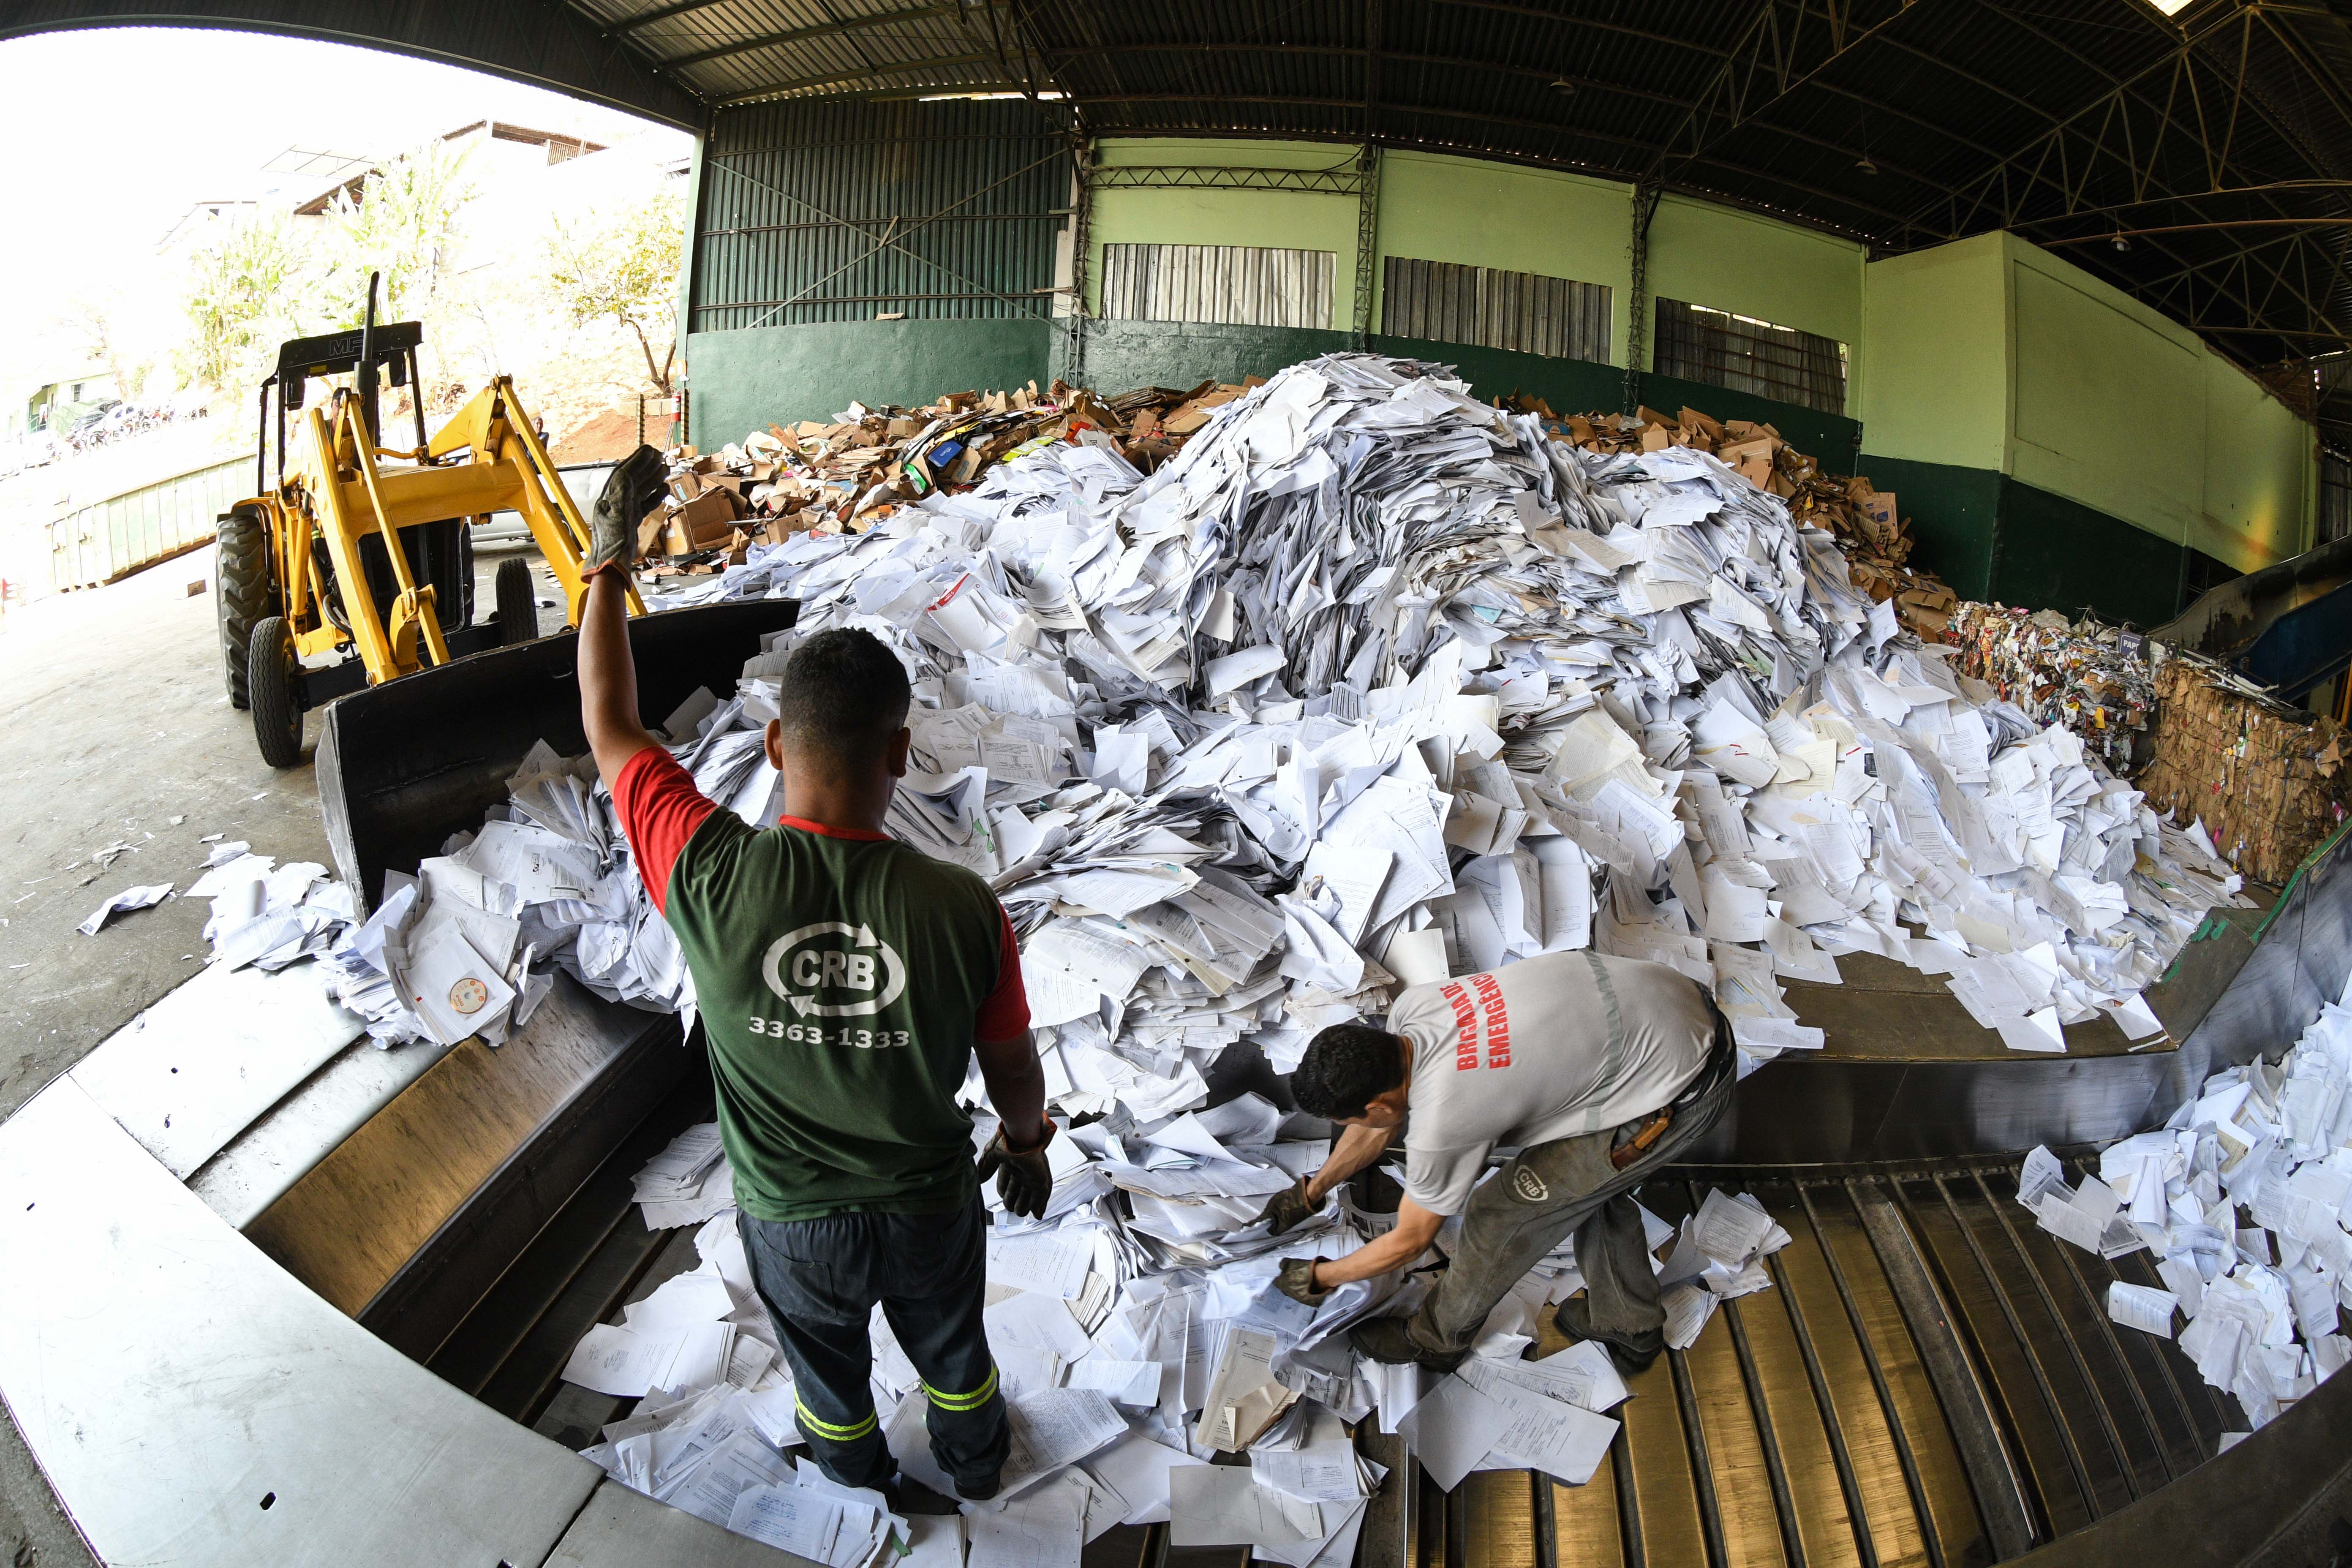 Coleta seletiva e reciclagem - TJMG j eliminou neste ano mais de 800 mil processos - foto robert leal.jpg